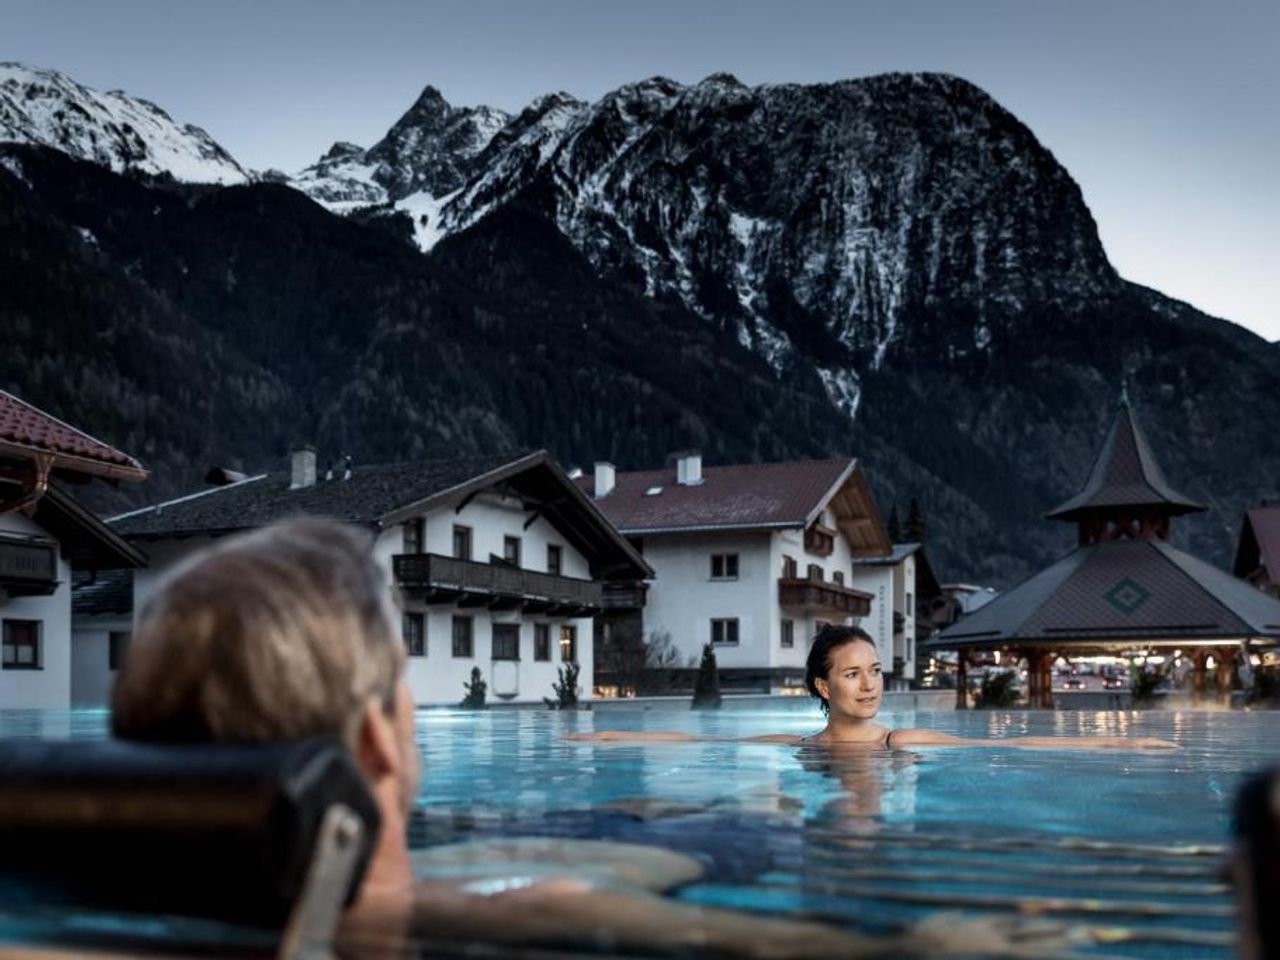 3 Tage Wellness & Genuss in den Tiroler Alpen